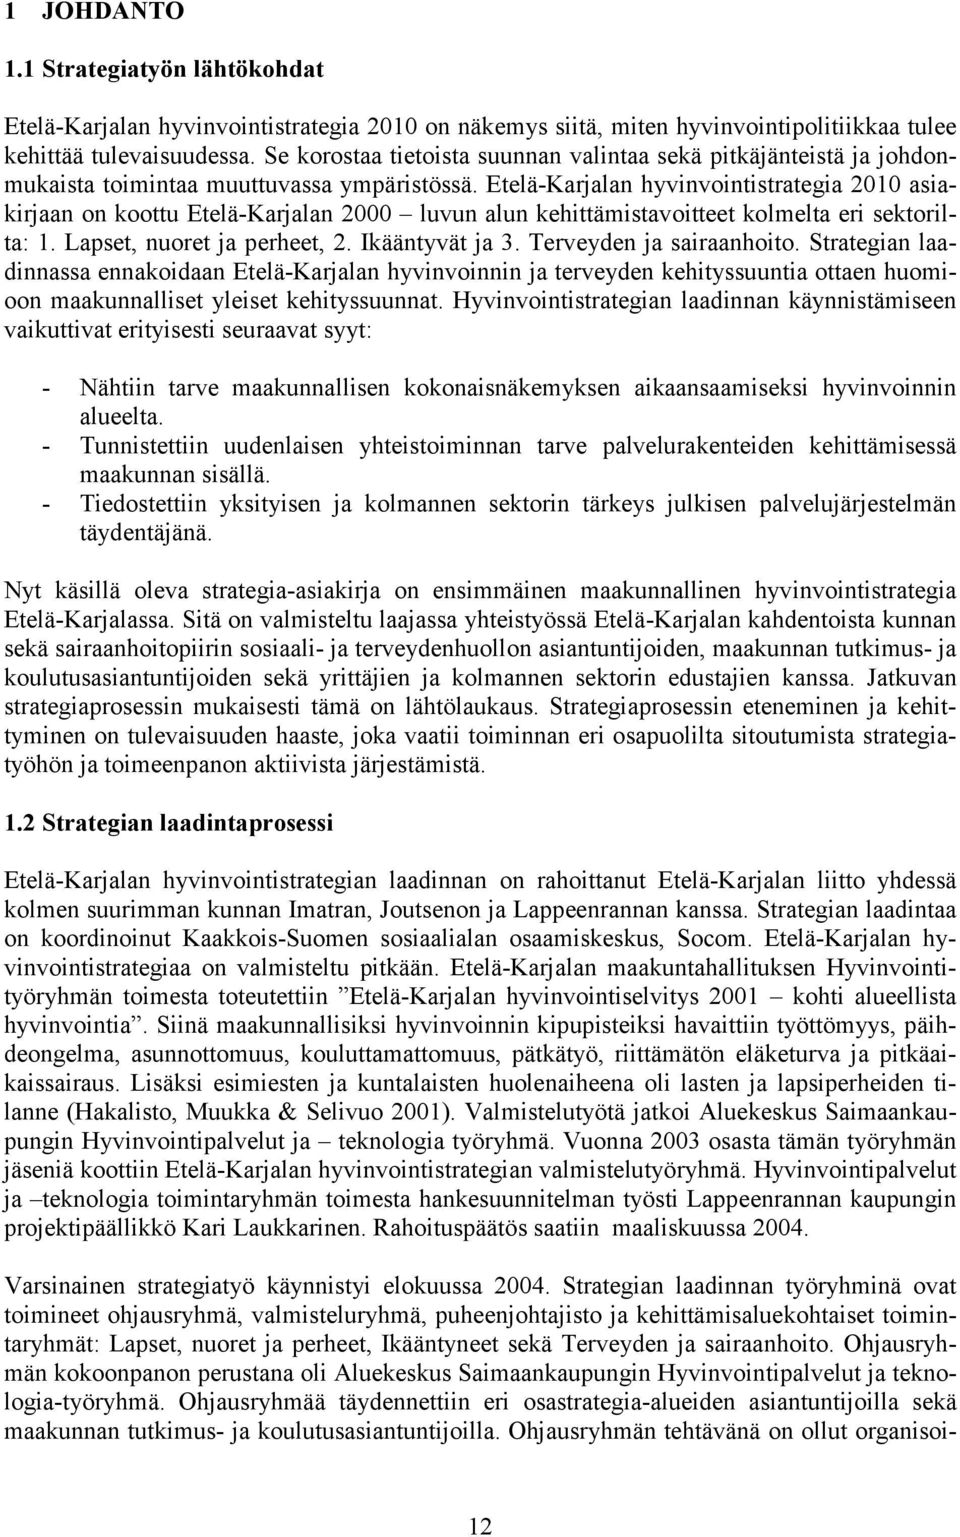 Etelä-Karjalan hyvinvointistrategia 2010 asiakirjaan on koottu Etelä-Karjalan 2000 luvun alun kehittämistavoitteet kolmelta eri sektorilta: 1. Lapset, nuoret ja perheet, 2. Ikääntyvät ja 3.